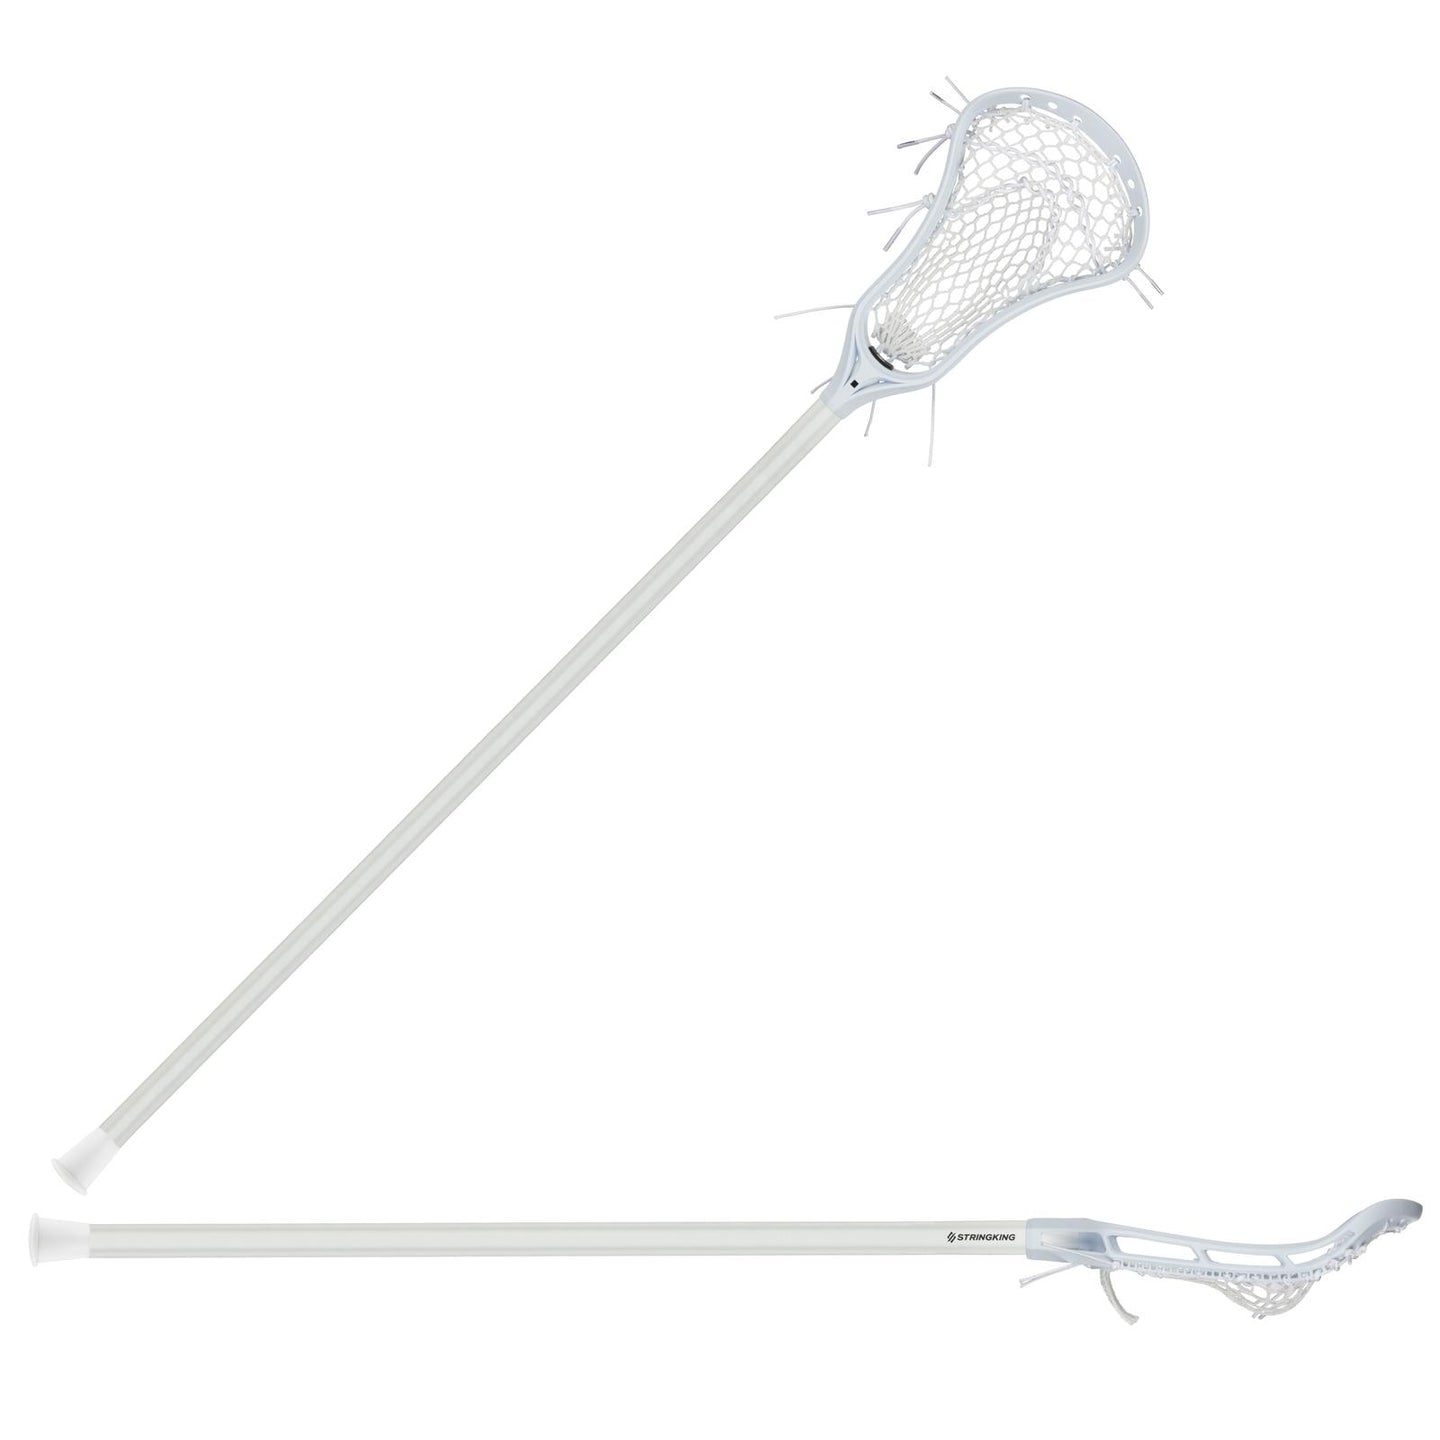 Picture of the white/white/white/white StringKing Women's Complete Composite Lacrosse Stick